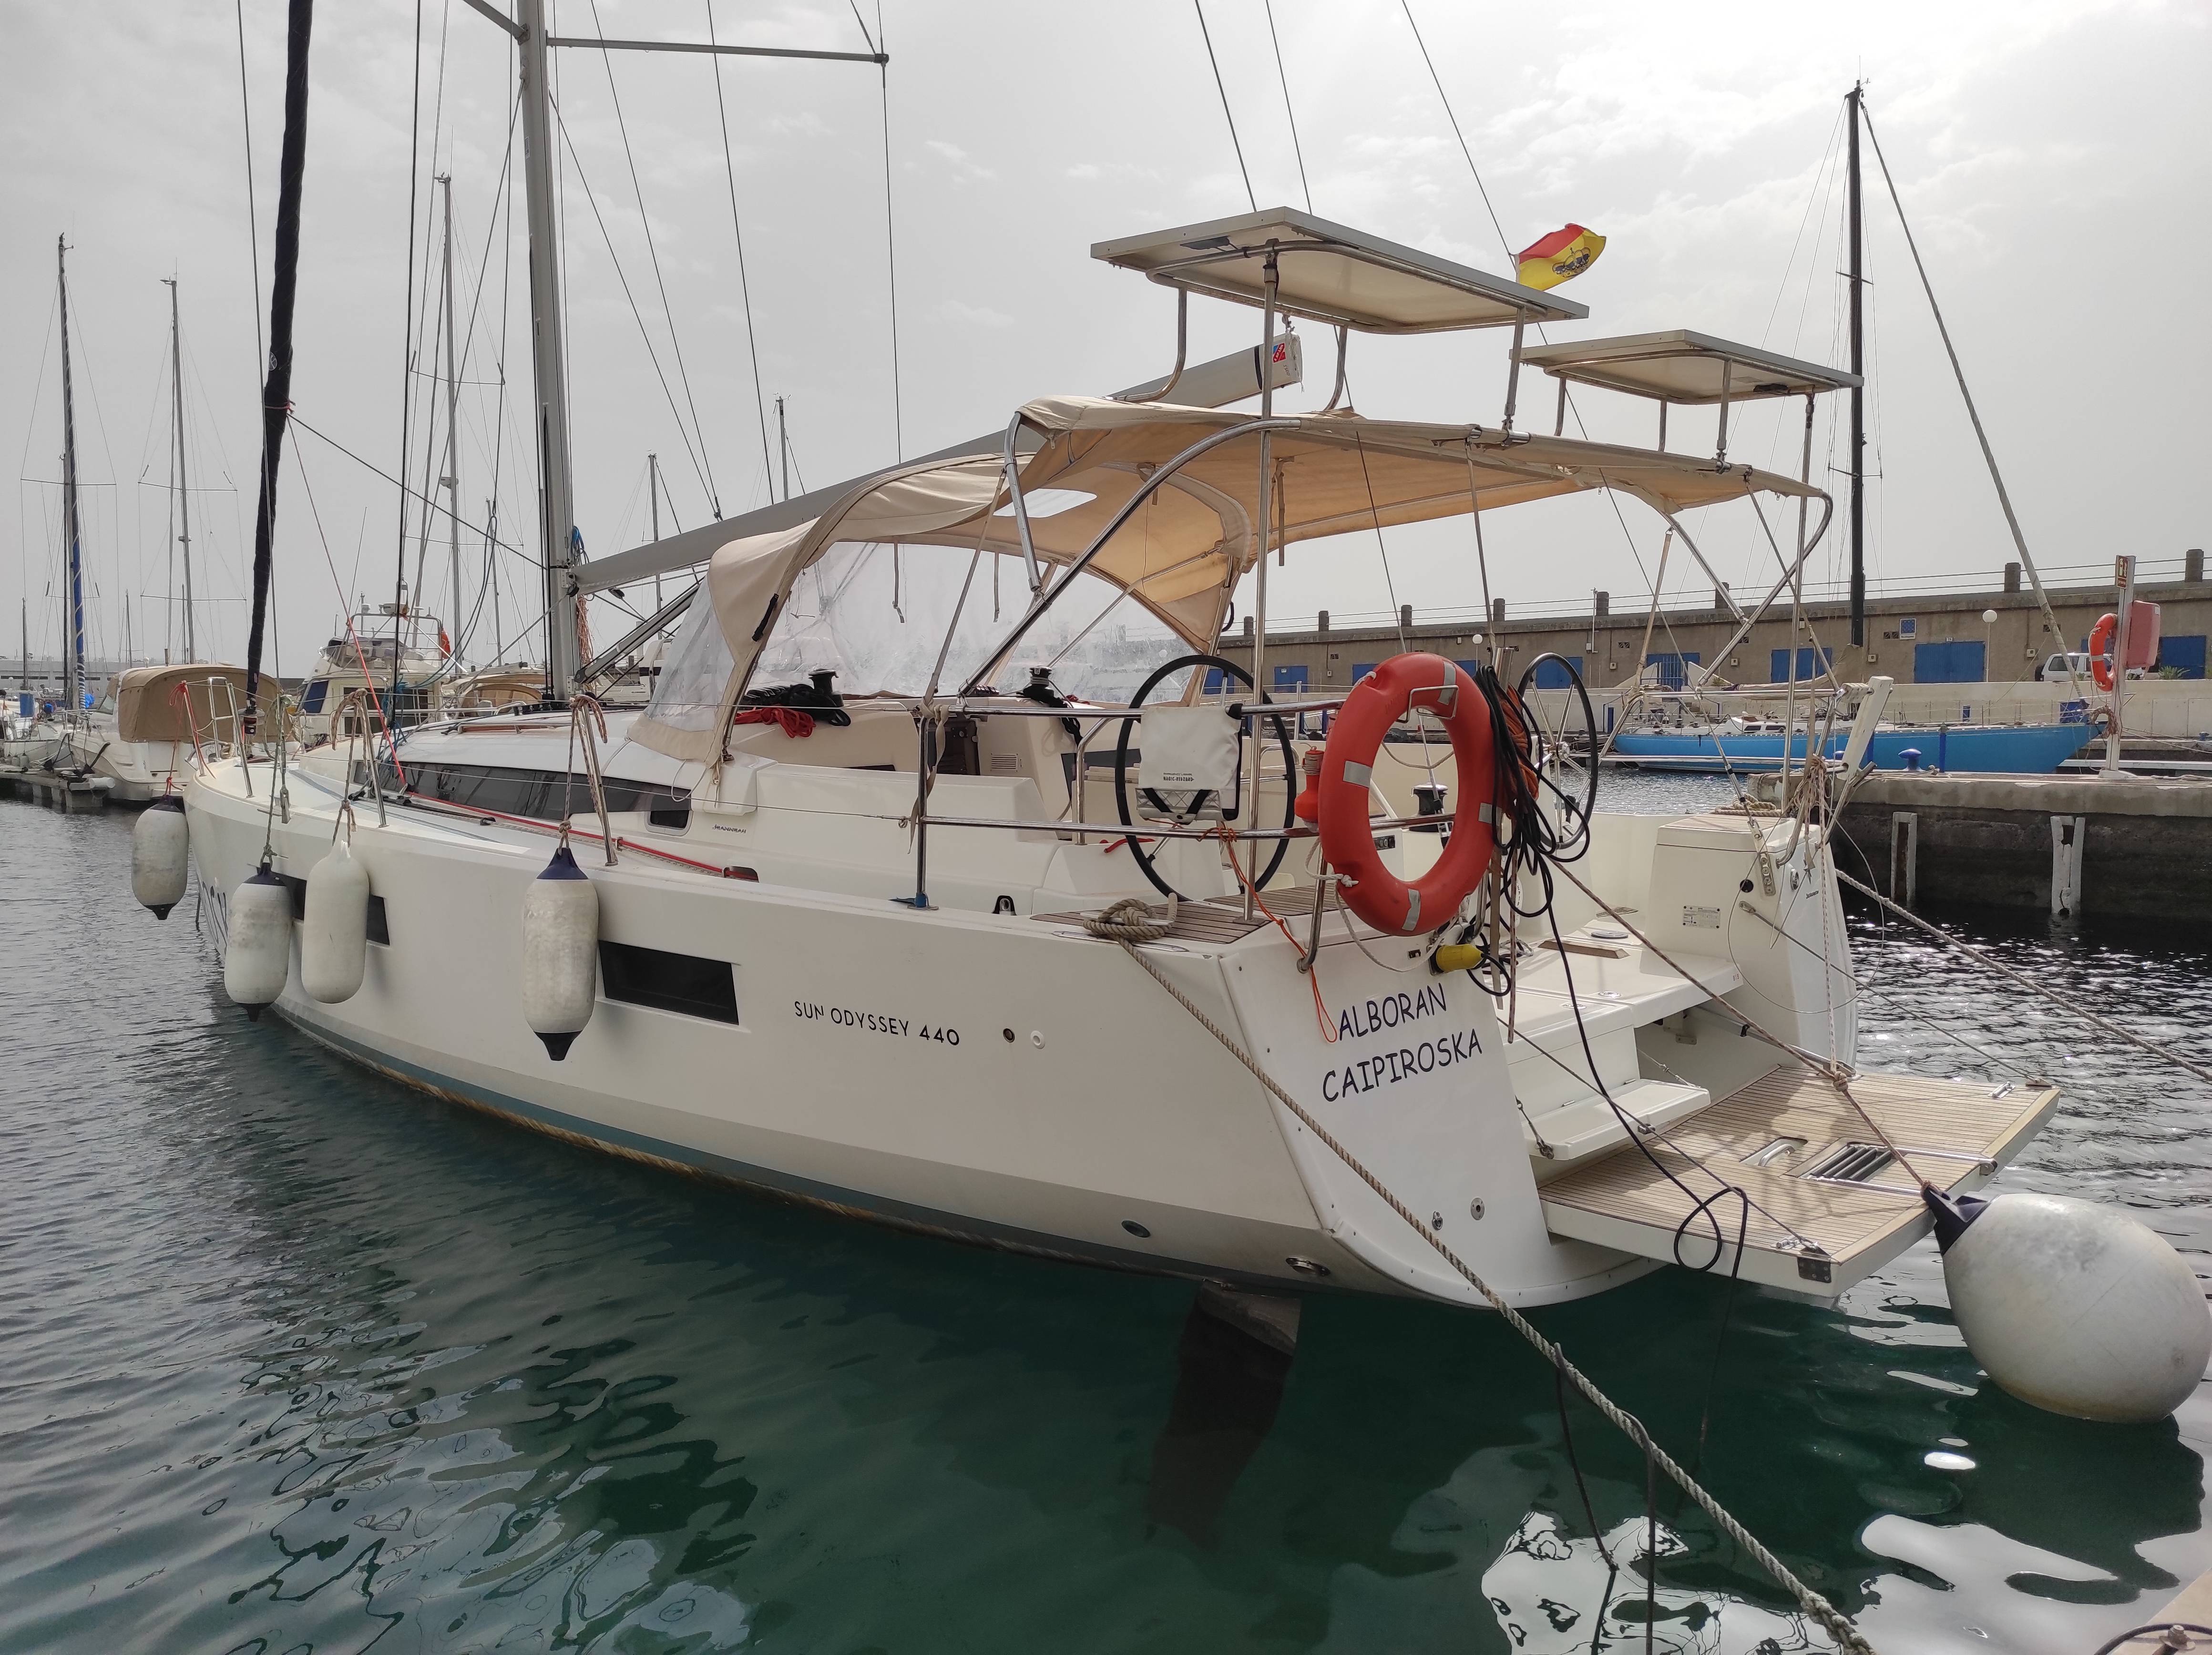 Sun Odyssey 440 - Yacht Charter Las Galletas & Boat hire in Spain Canary Islands Tenerife Las Galletas Marina del Sur 5